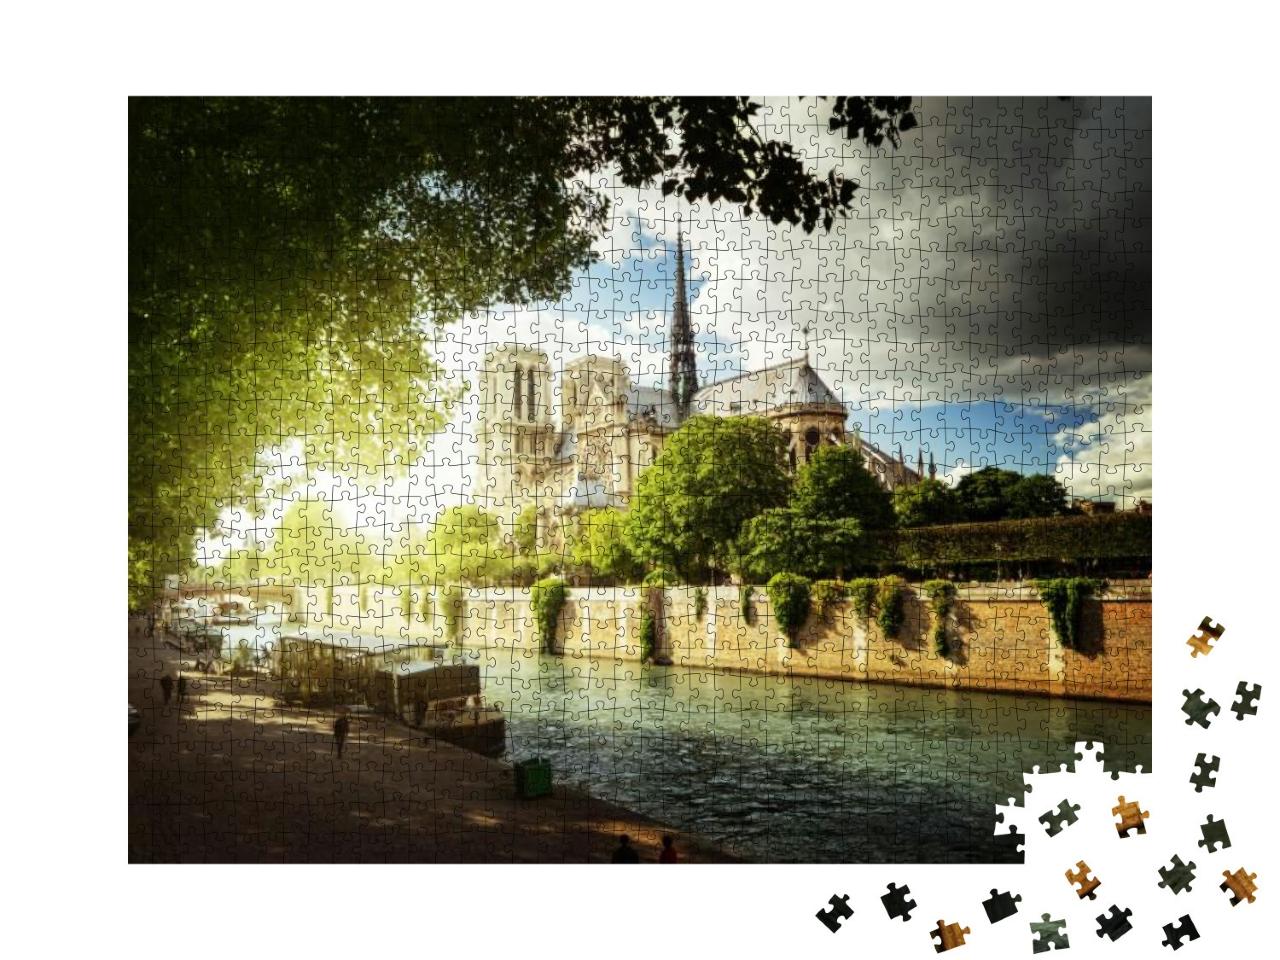 Seine & Notre Dame De Paris, Paris, France... Jigsaw Puzzle with 1000 pieces